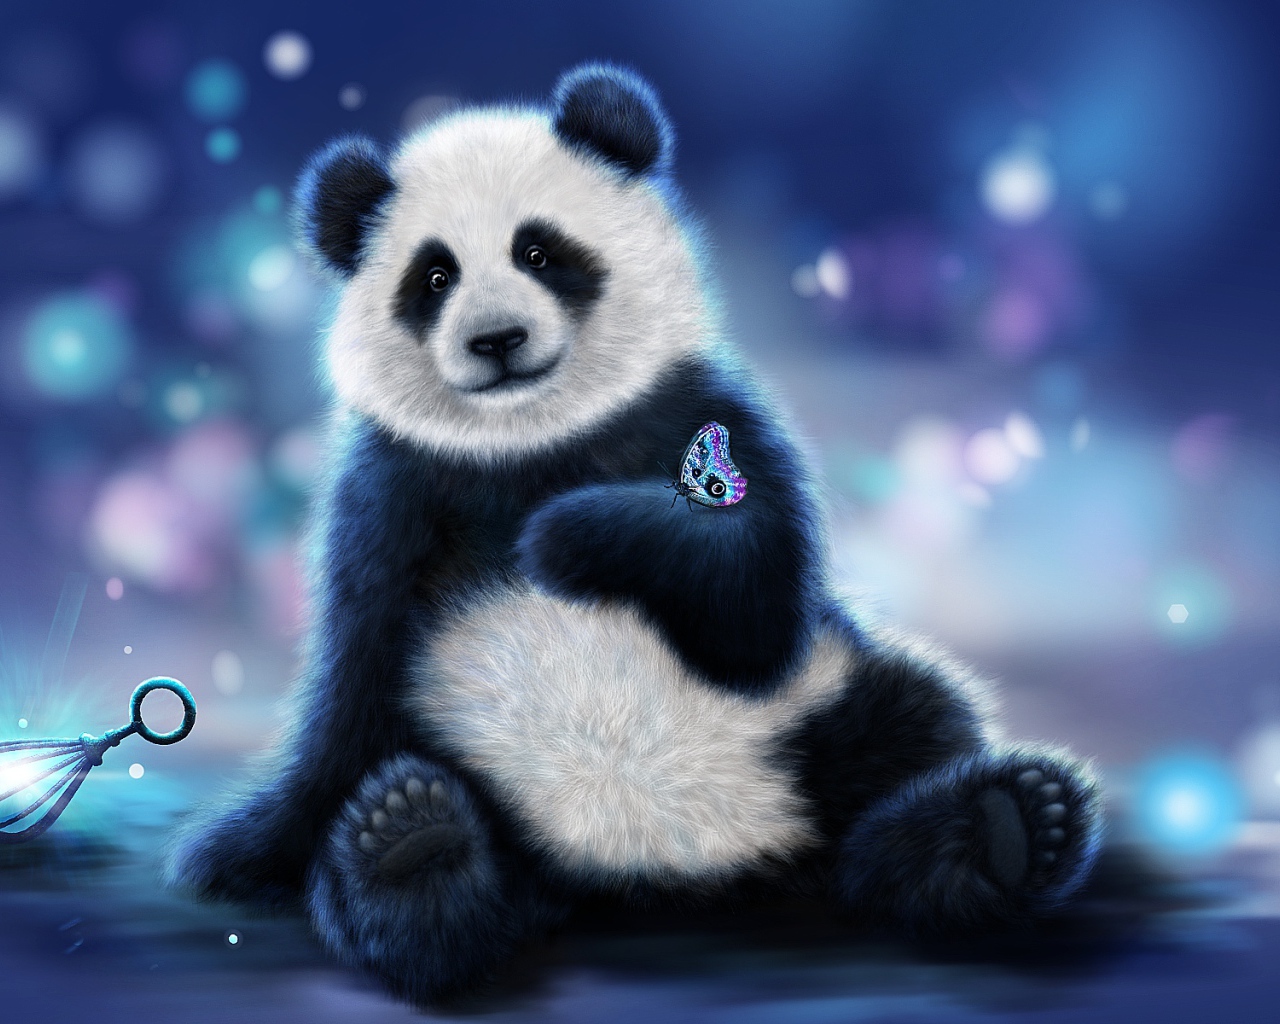 Нарисованный медведь панда с бабочкой на лапе